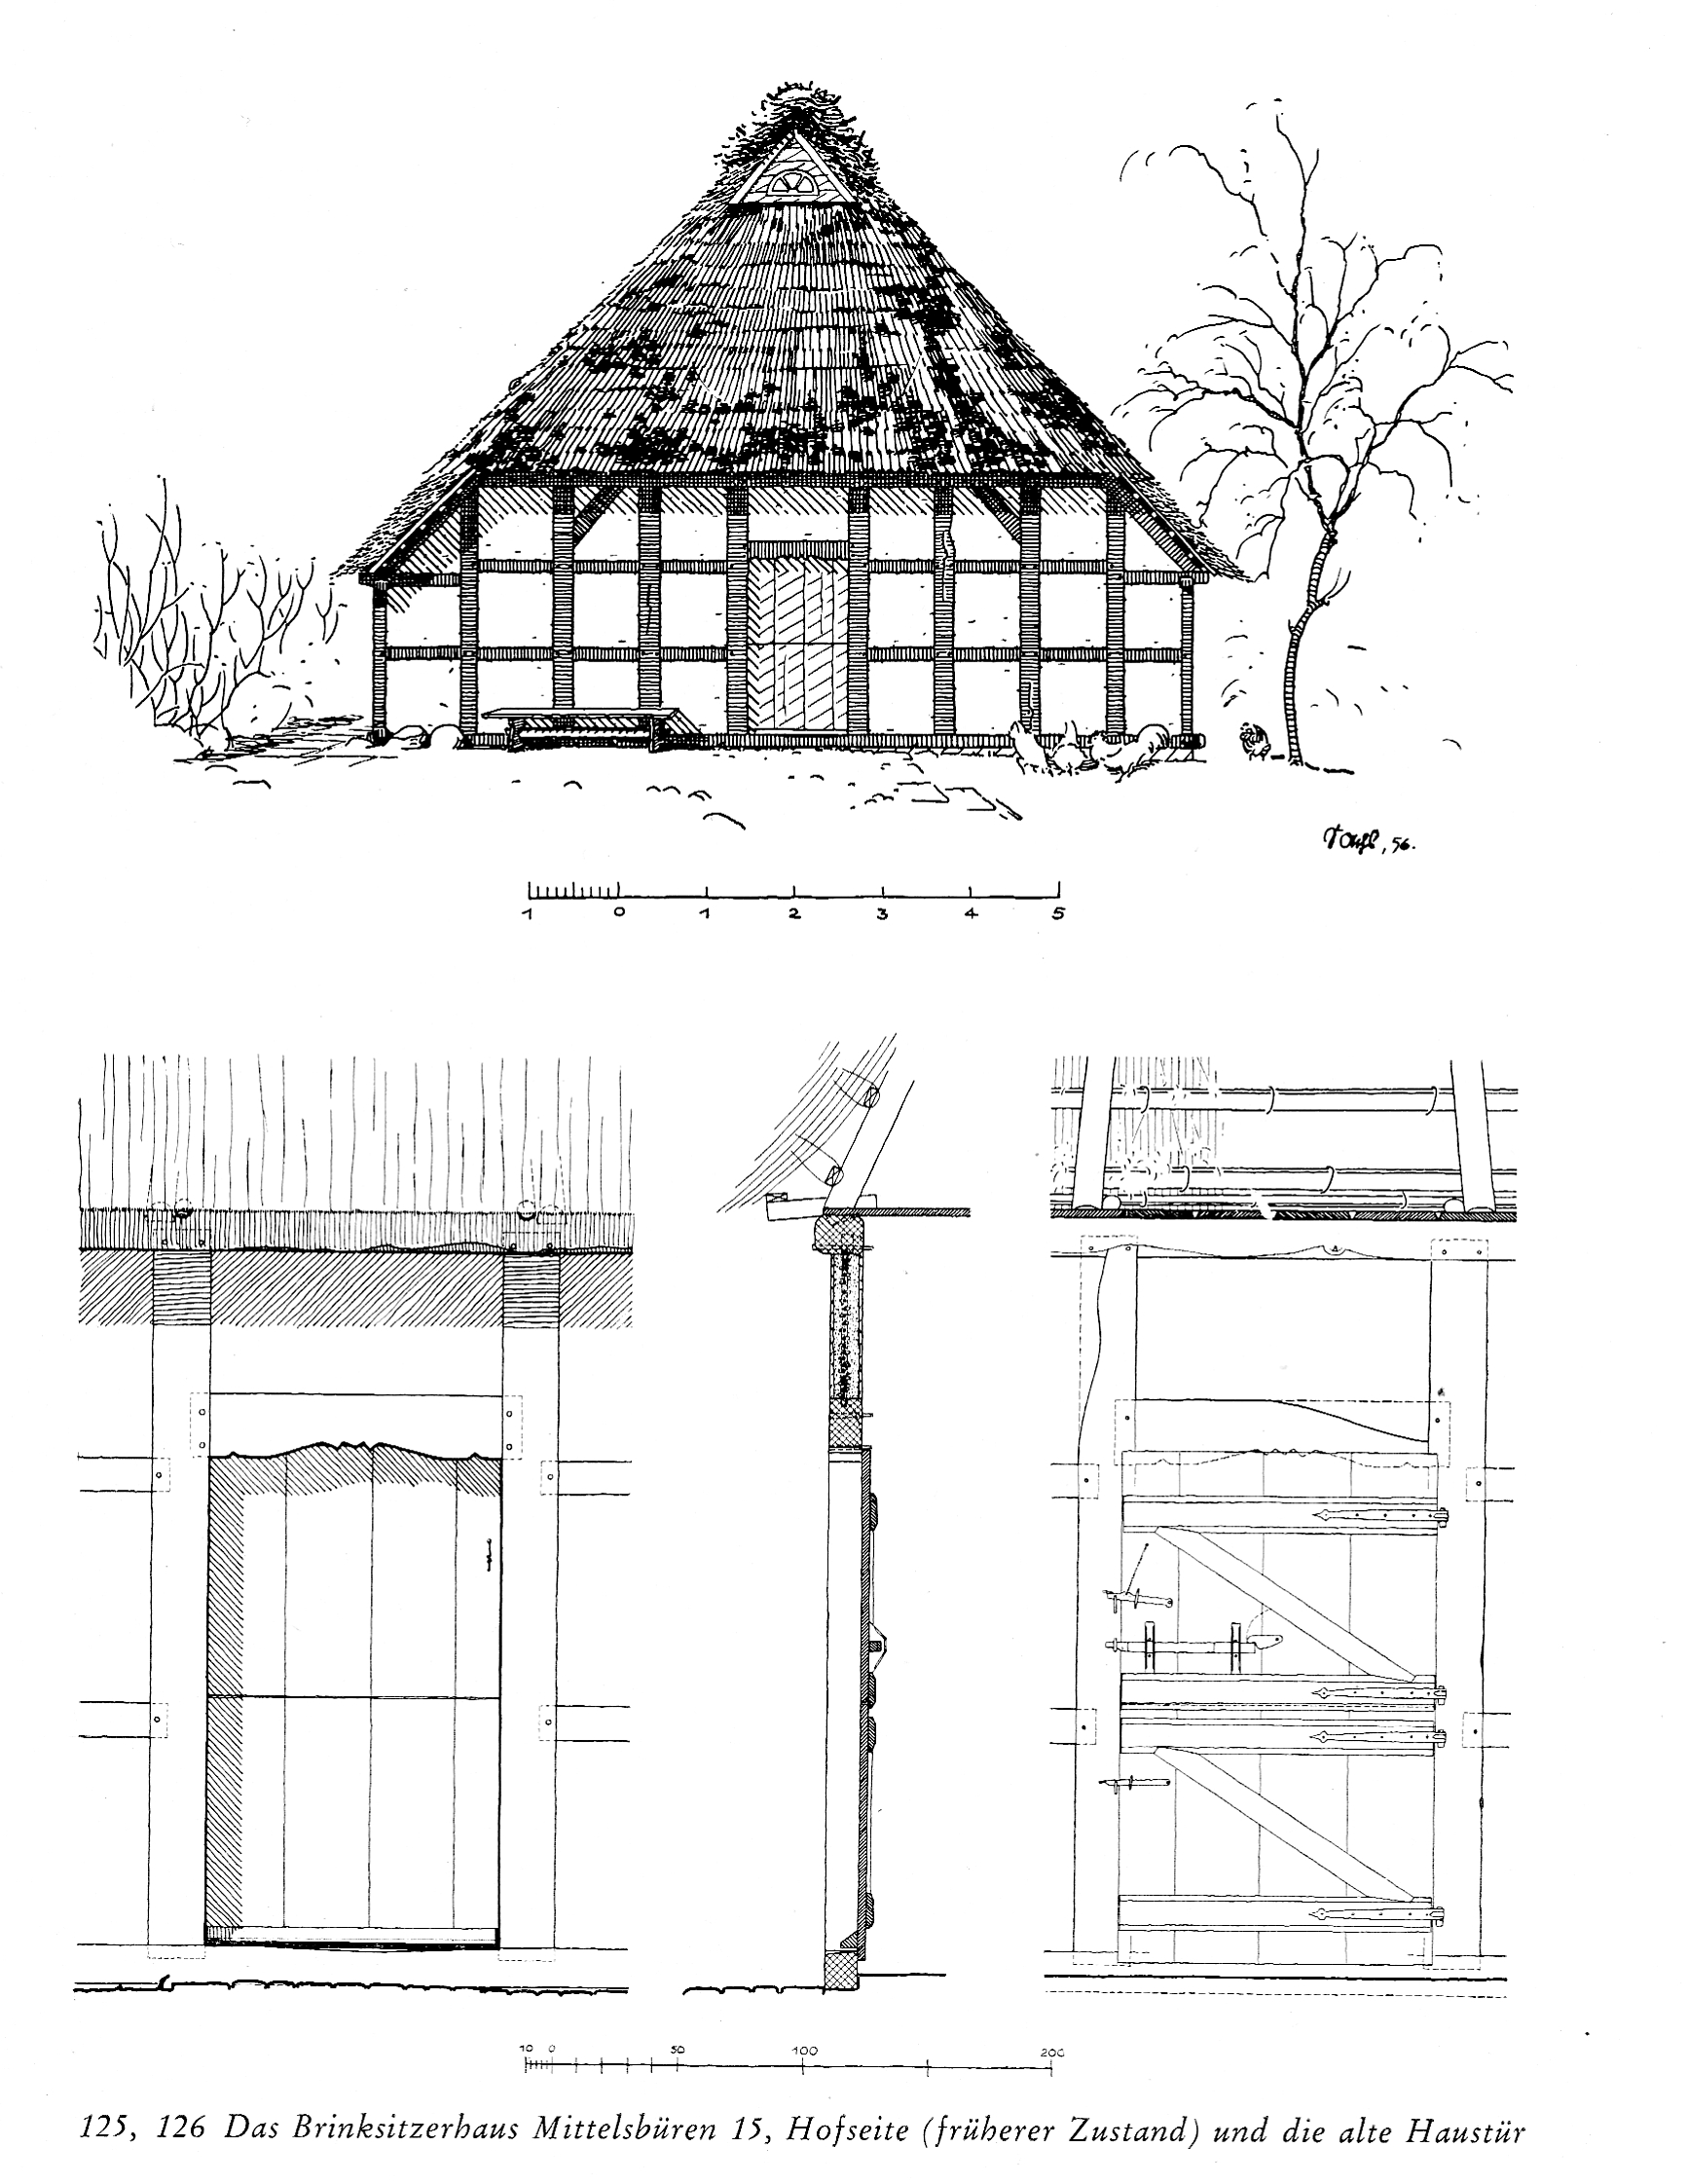 Zeichnung der Hofseite und der alten Haustür